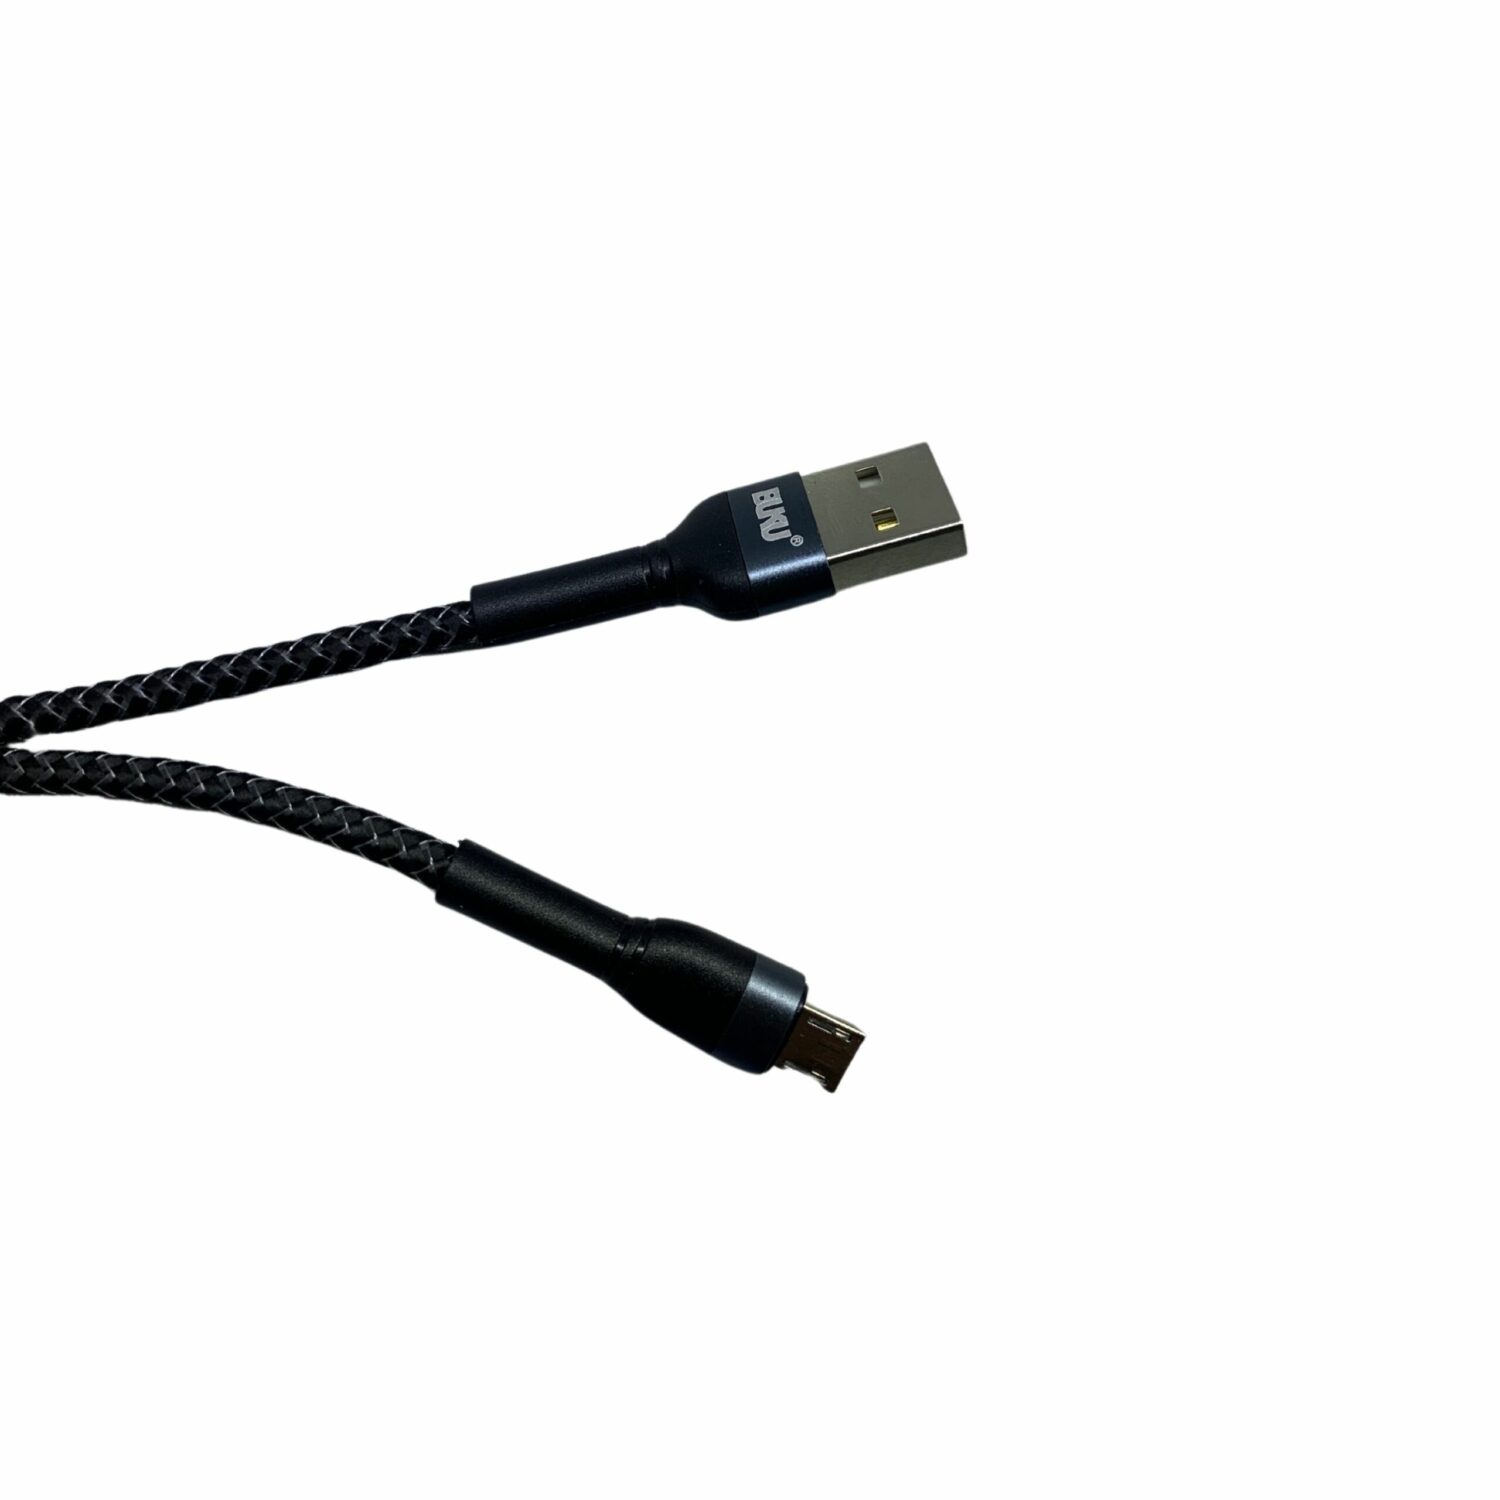 CABLE USB TIPO C MA-059 BUKU – Todo en Tecnología